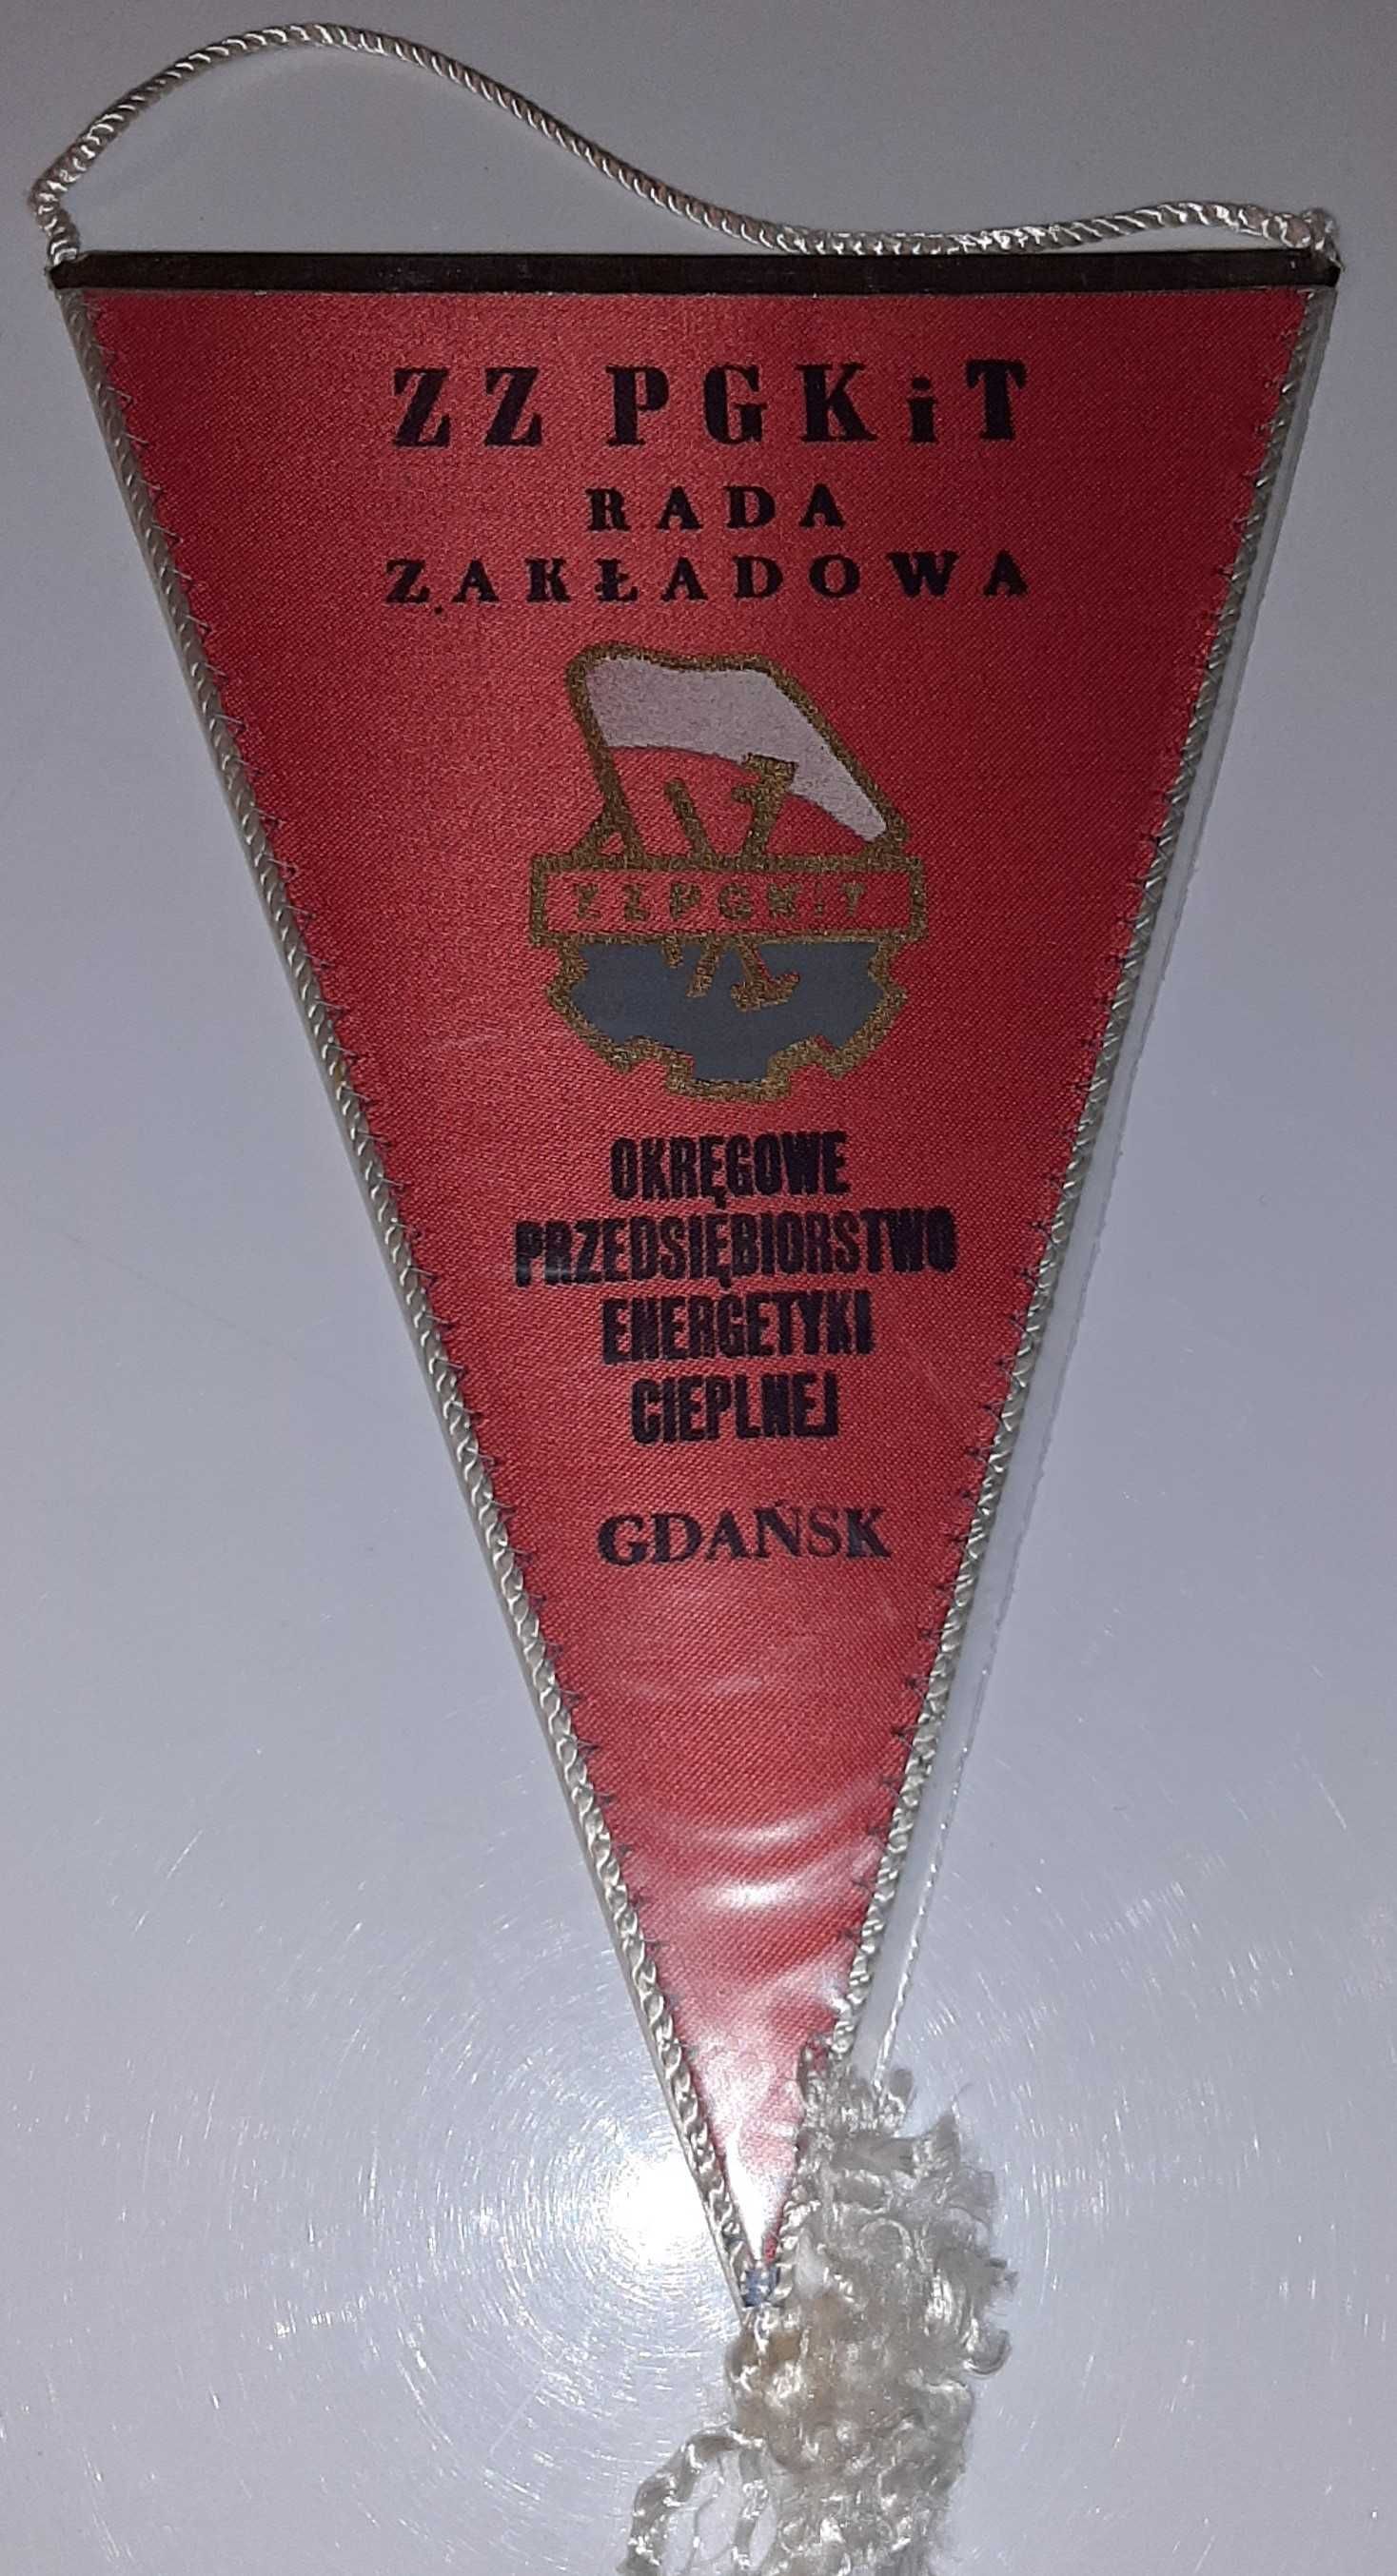 Proporczyk Brygada Pracy Socjalistycznej OPEC Gdańsk ZZPGKiT